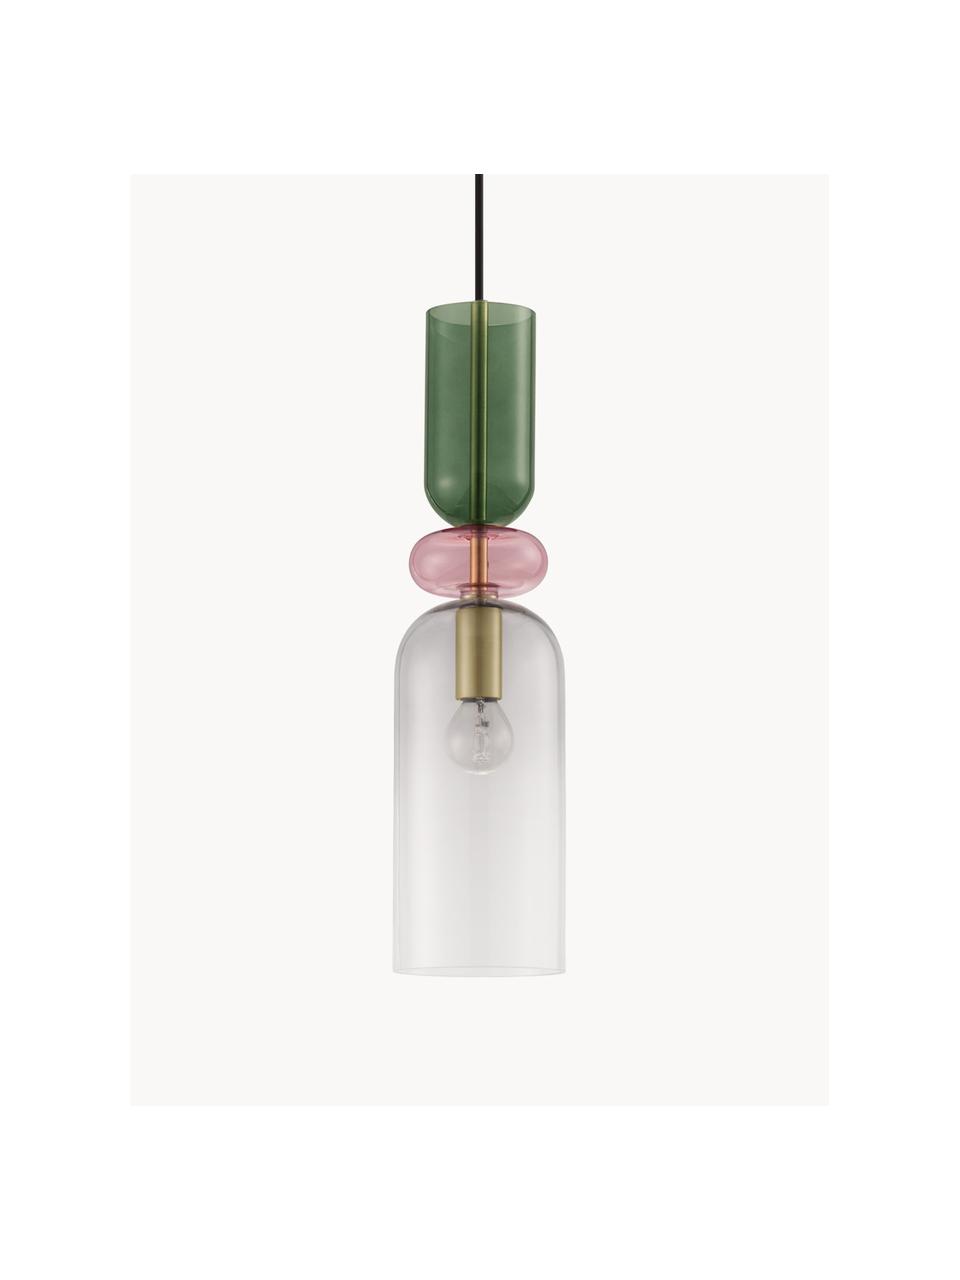 Malé závěsné svítidlo Murano, Zlatá, transparentní, růžová, zelená, Ø 11 cm, V 44 cm